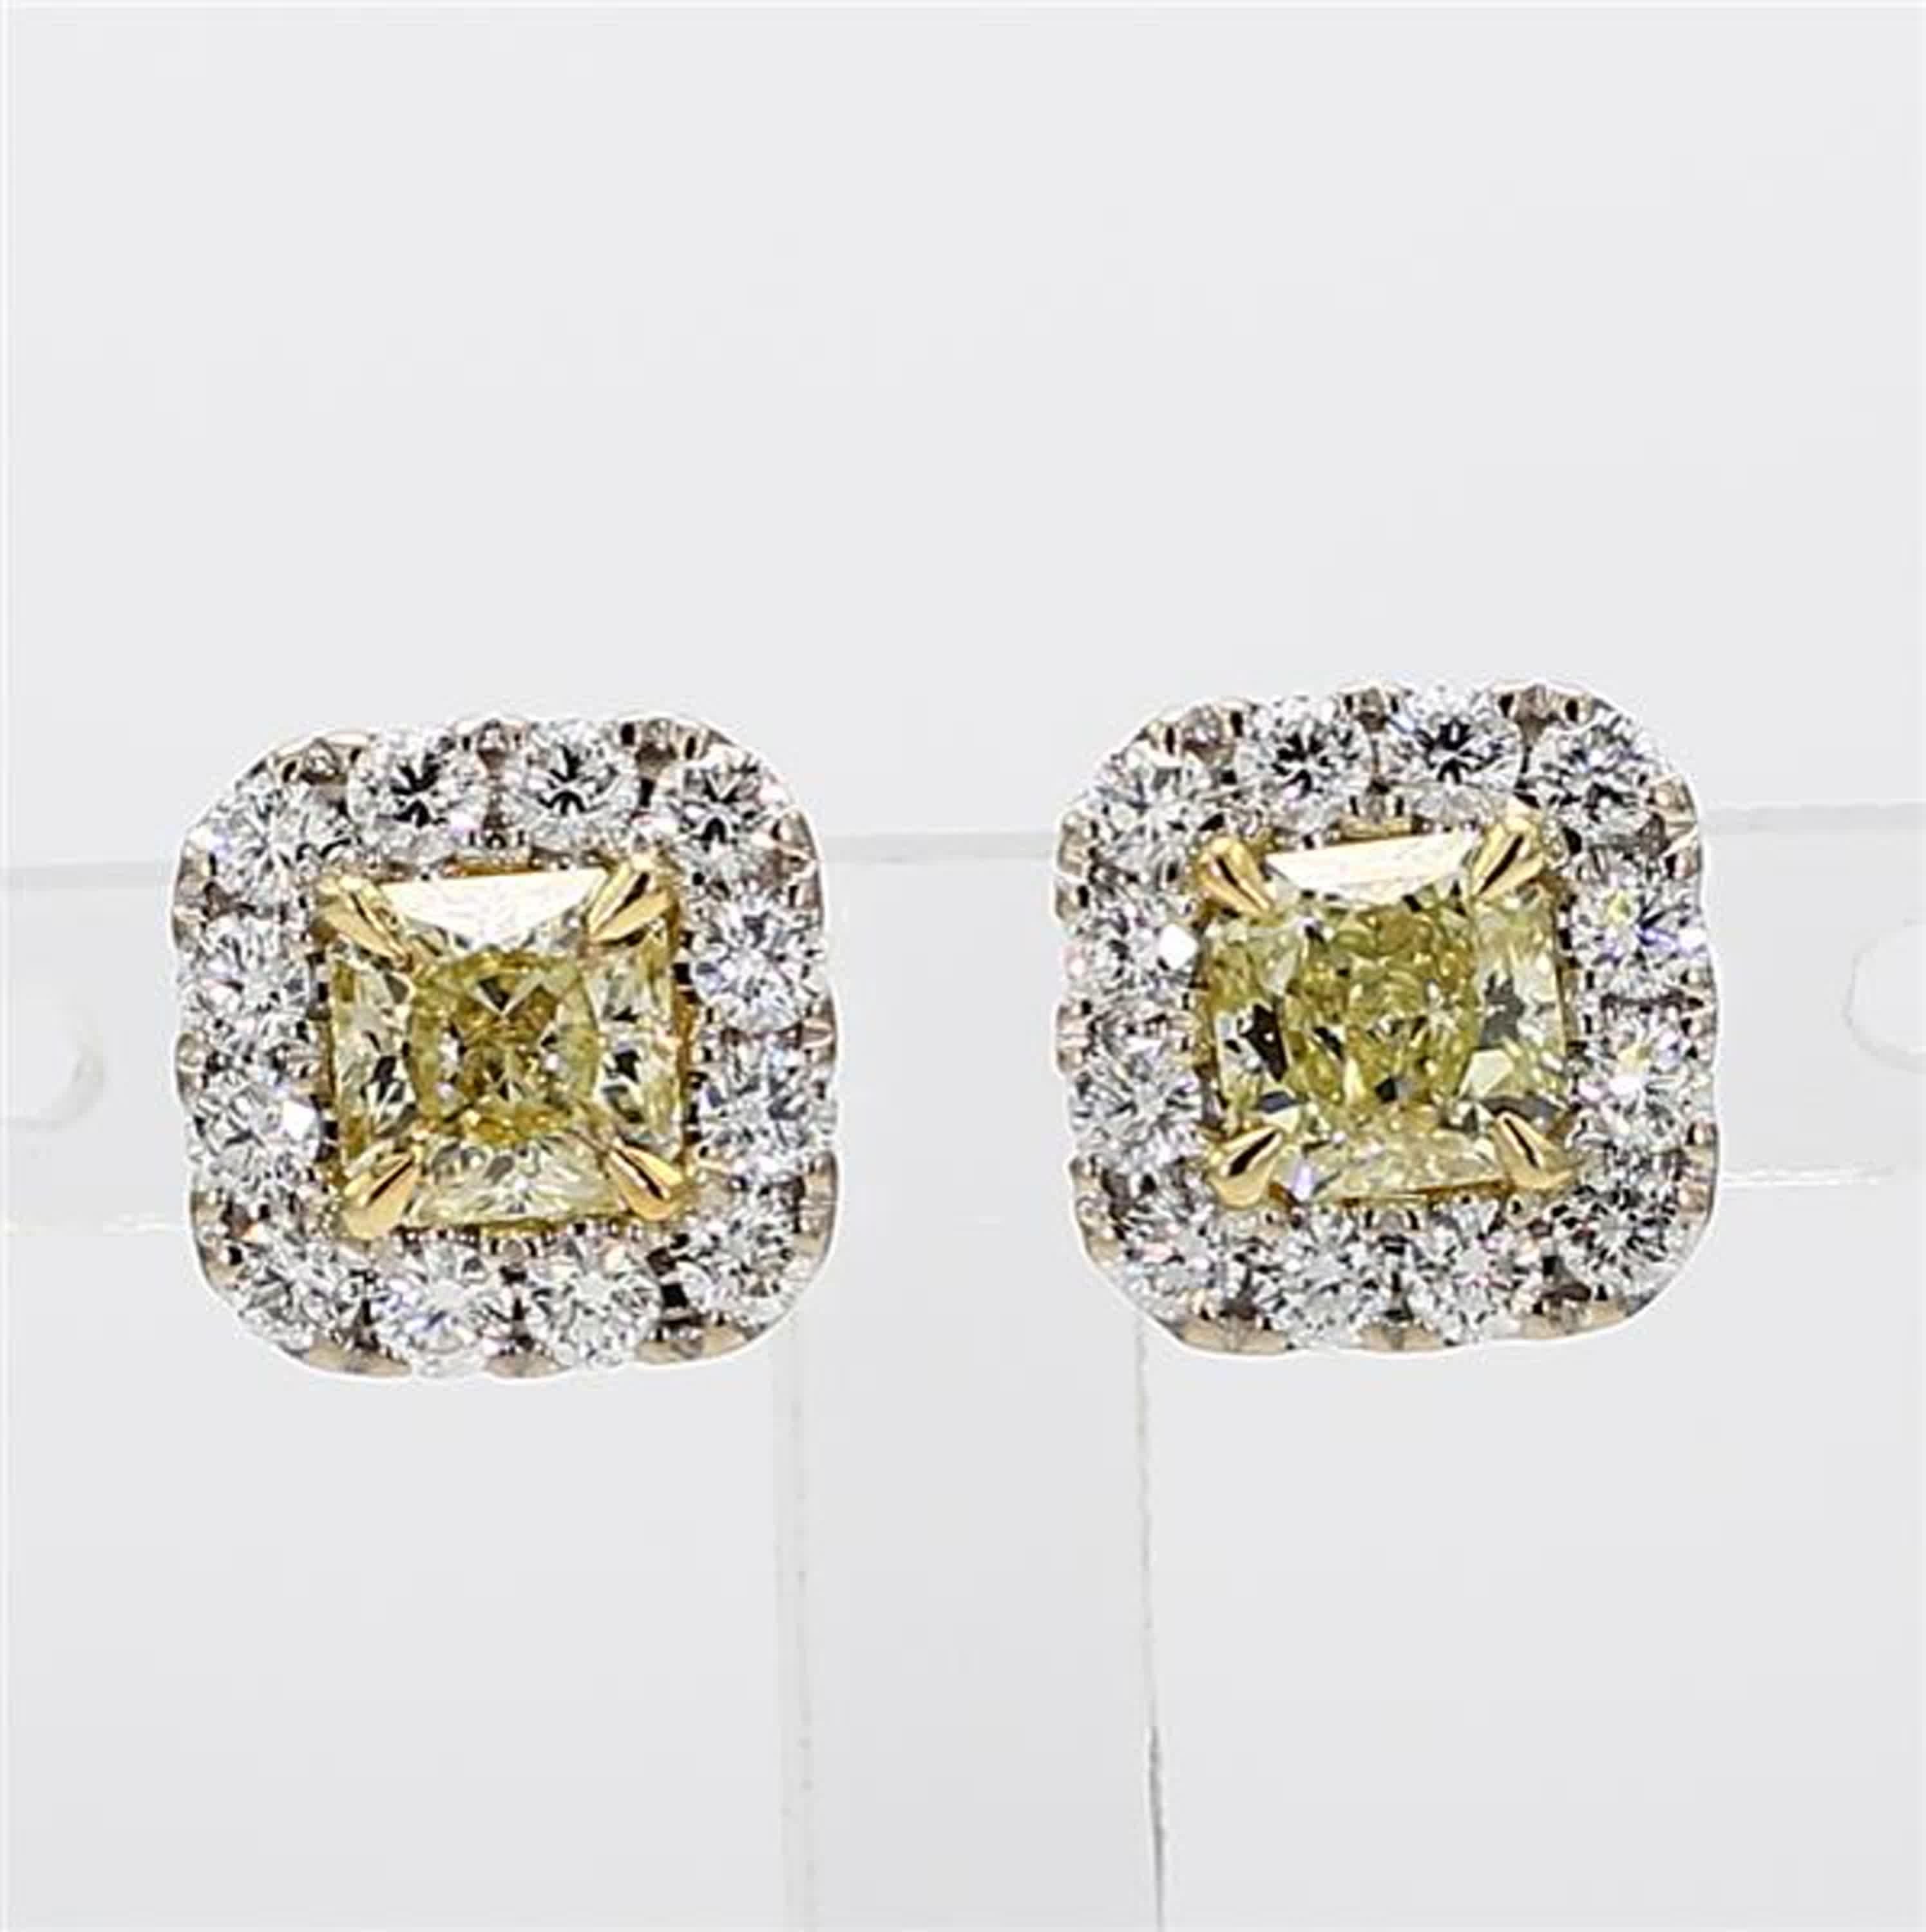 Les boucles d'oreilles classiques en diamant certifié GIA de Raregemworld. Monté dans une belle monture en or jaune et blanc 18 carats avec des diamants jaunes naturels de taille radieuse. Les diamants jaunes sont entourés d'une mêlée de diamants